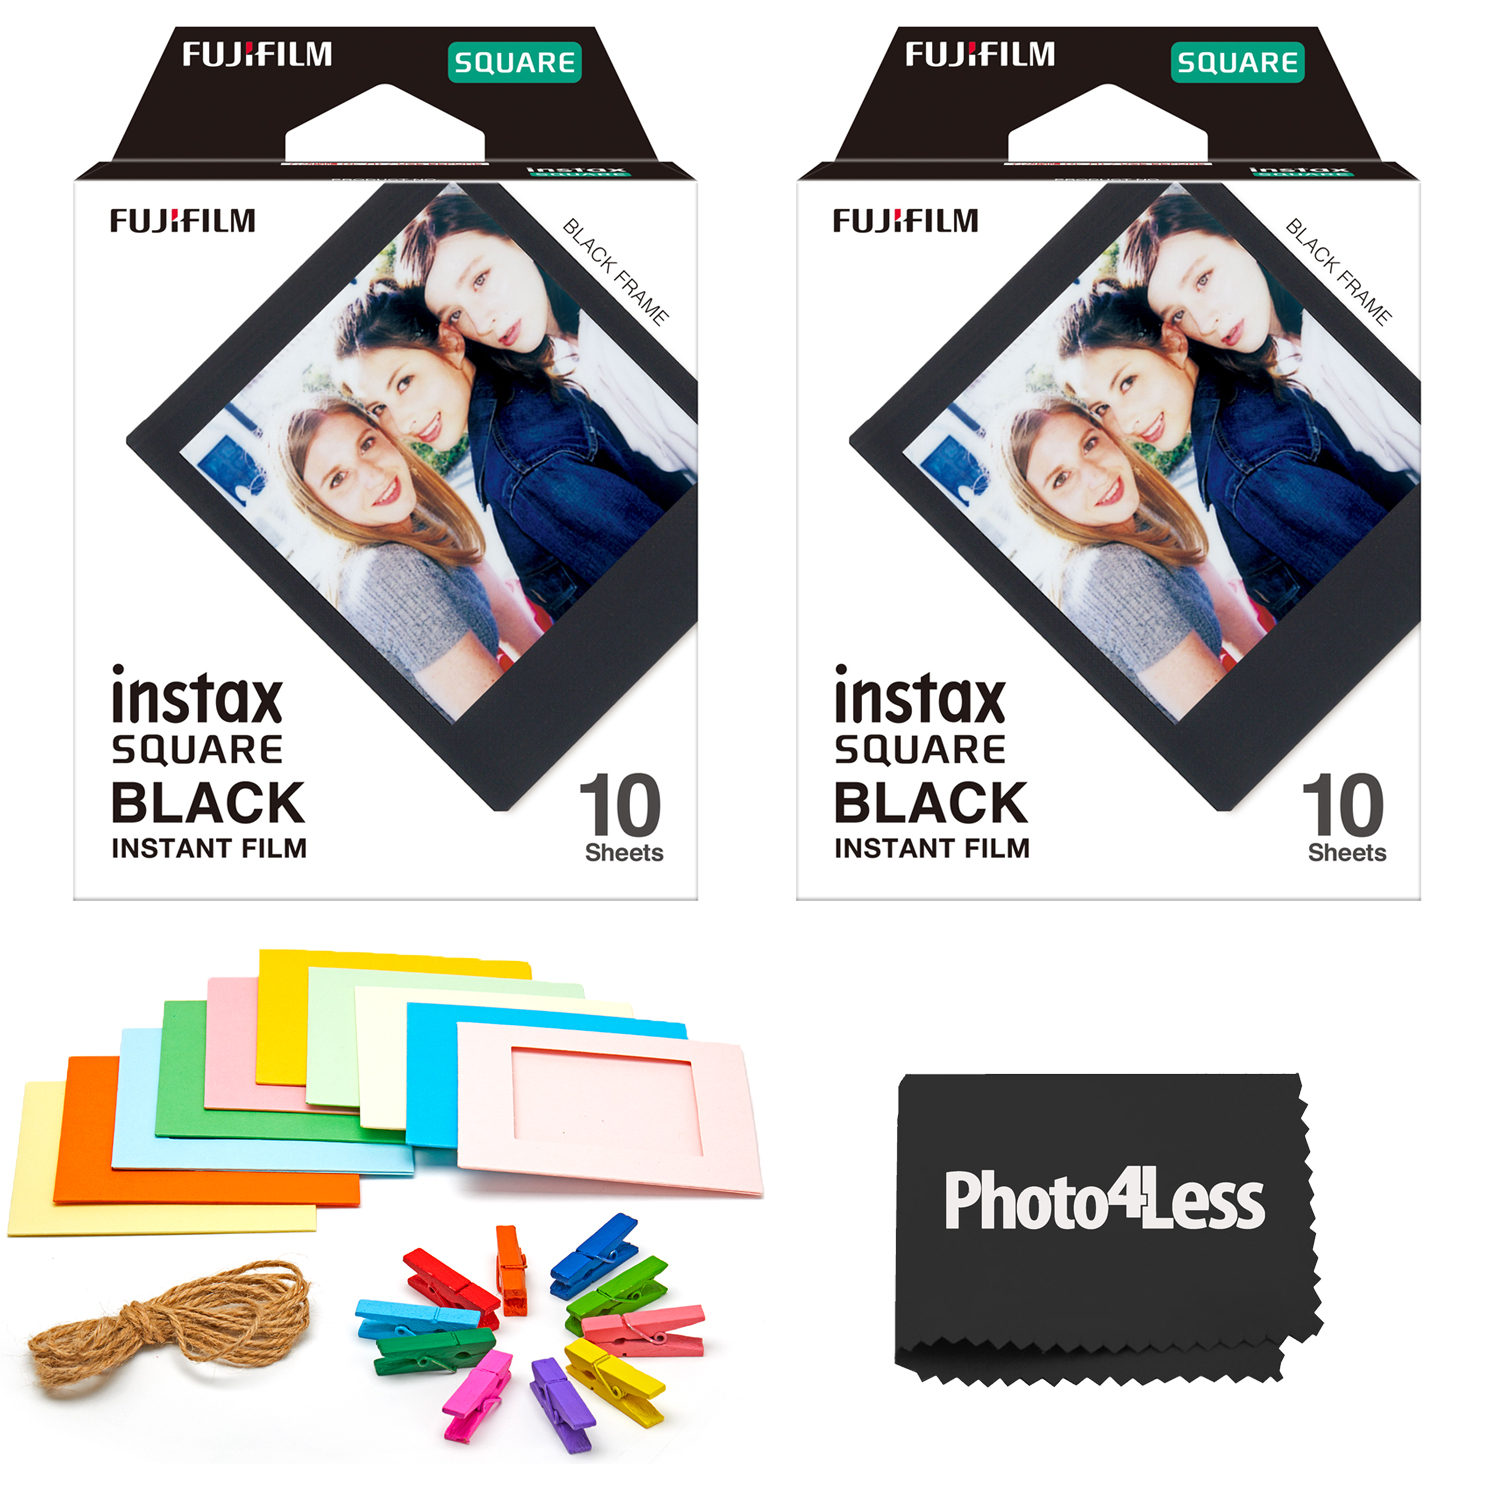 Fujifilm Instax Square Black Frame Instant Film - 10 Exposures